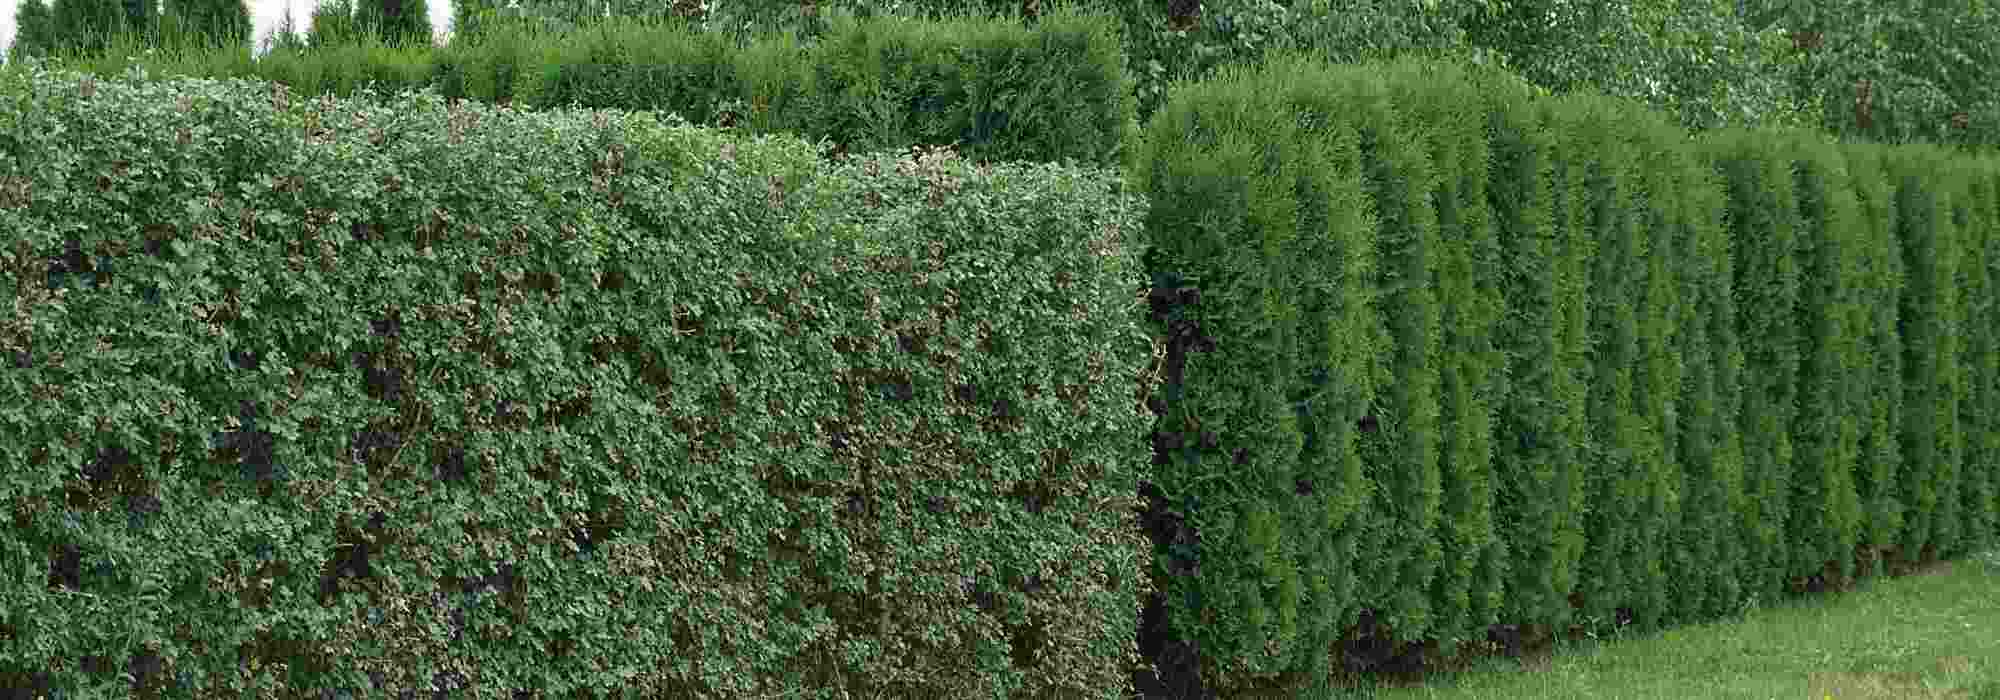 Haie brise vue : 10 arbustes brise-vue efficaces pour retrouver l